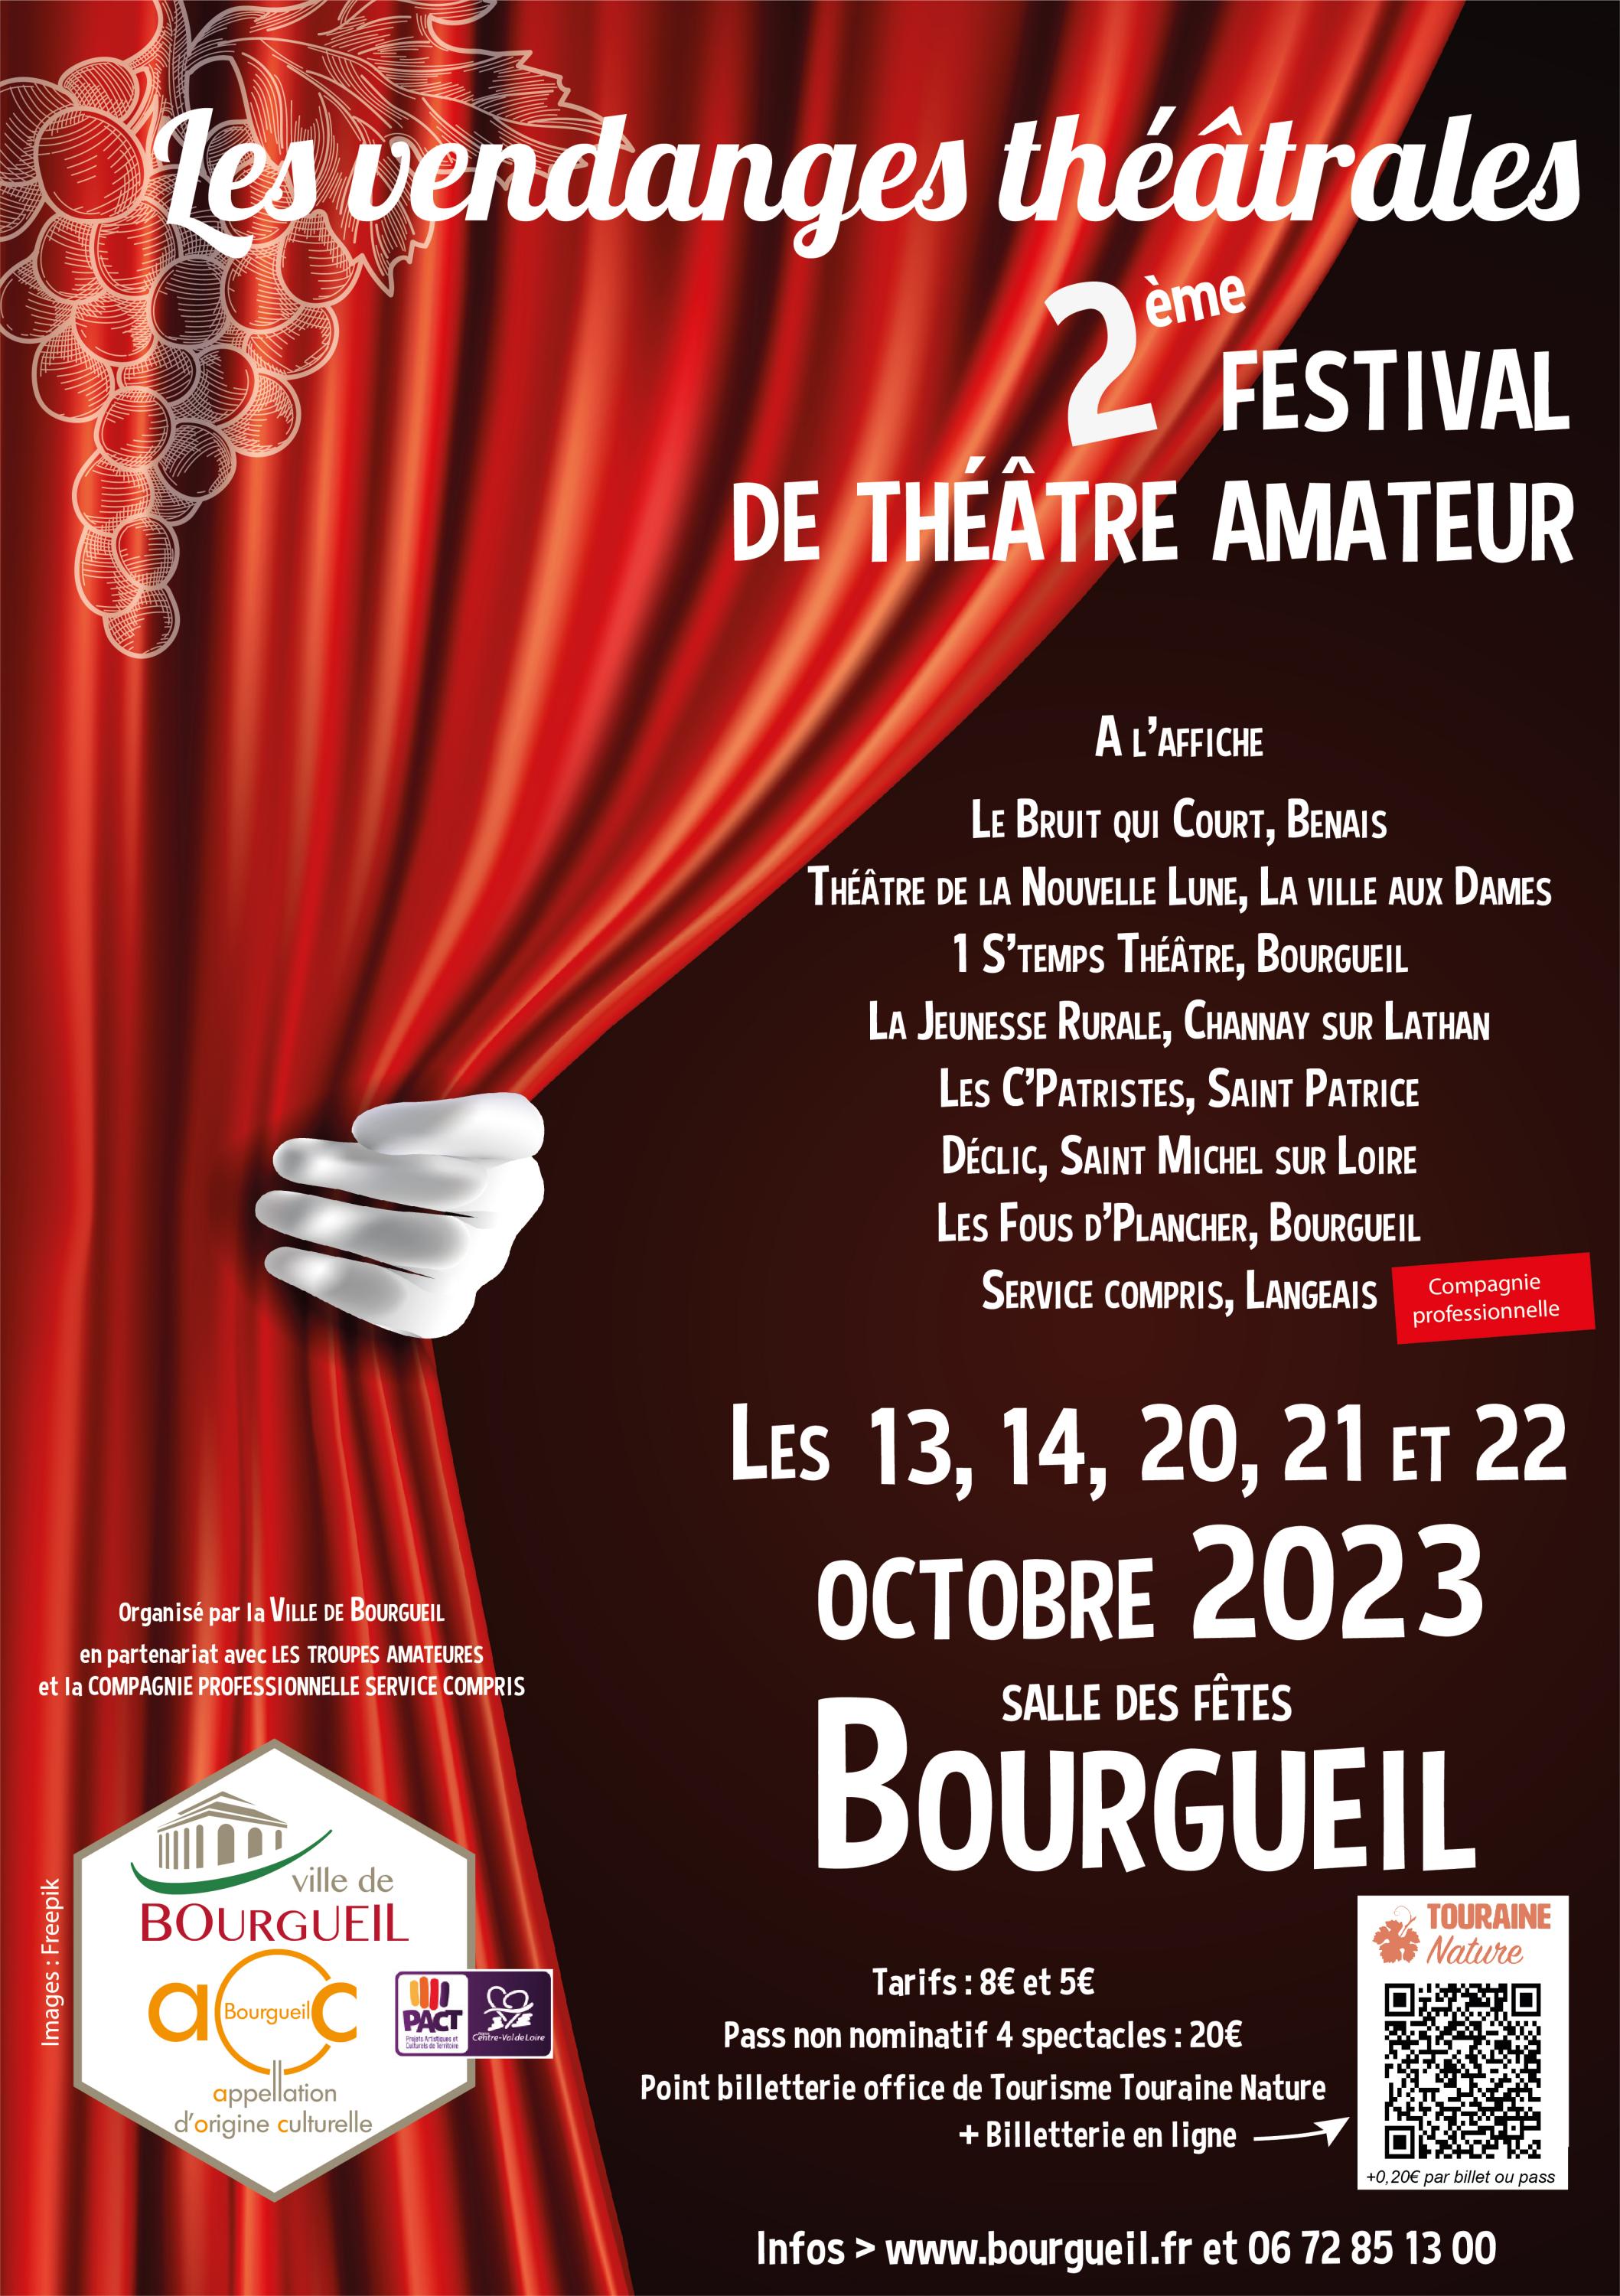 Les Vendanges Théâtrales, Festival de Théâtre Amateur